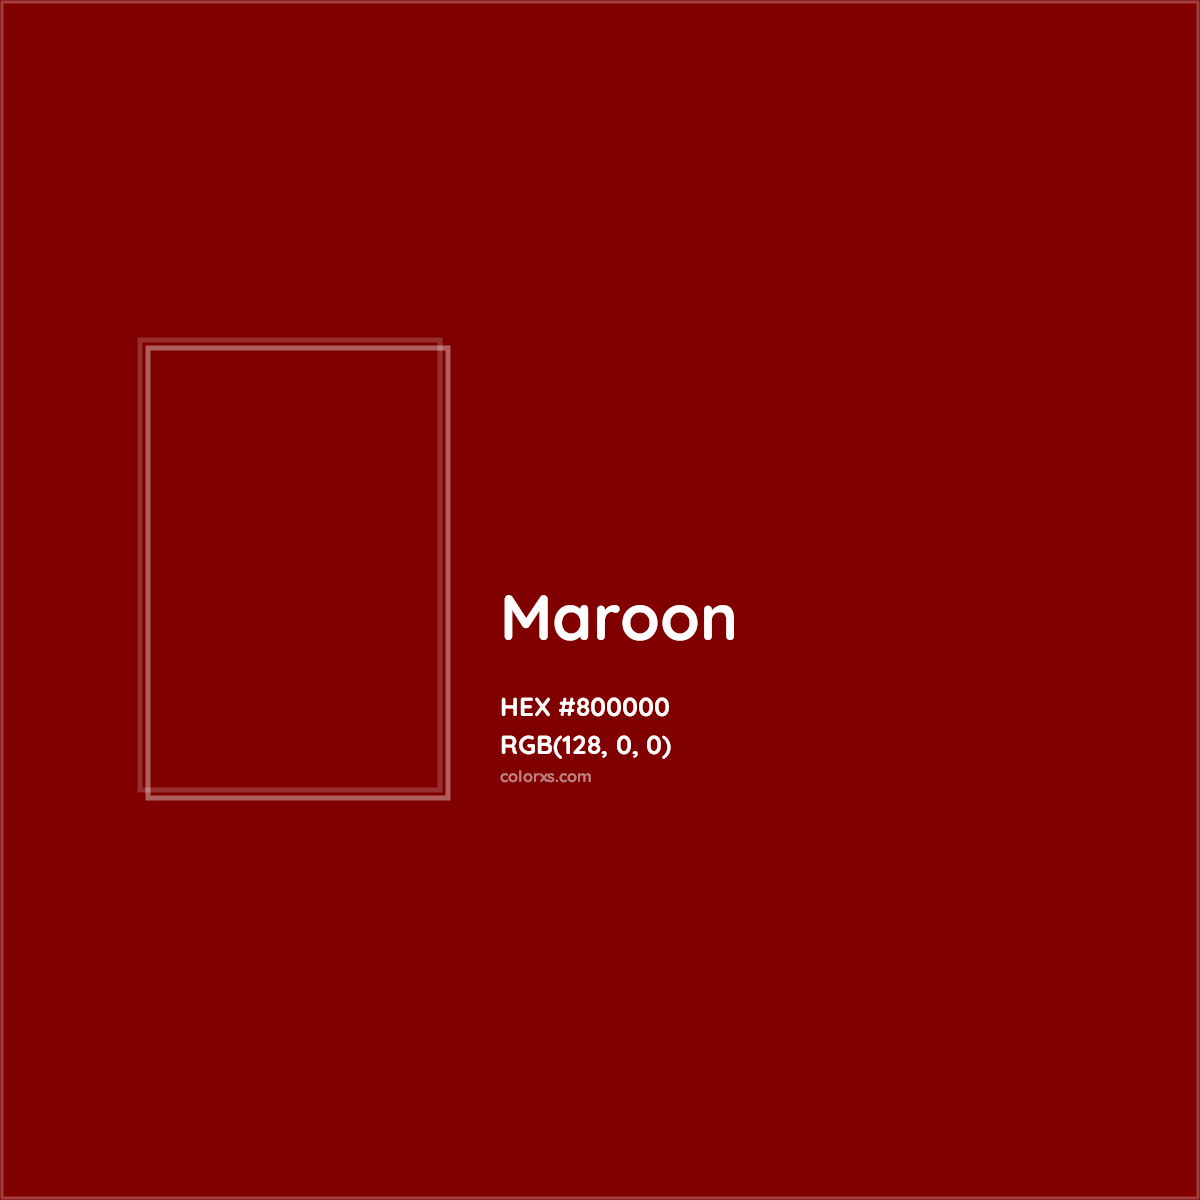 HEX #800000 Maroon Color - Color Code